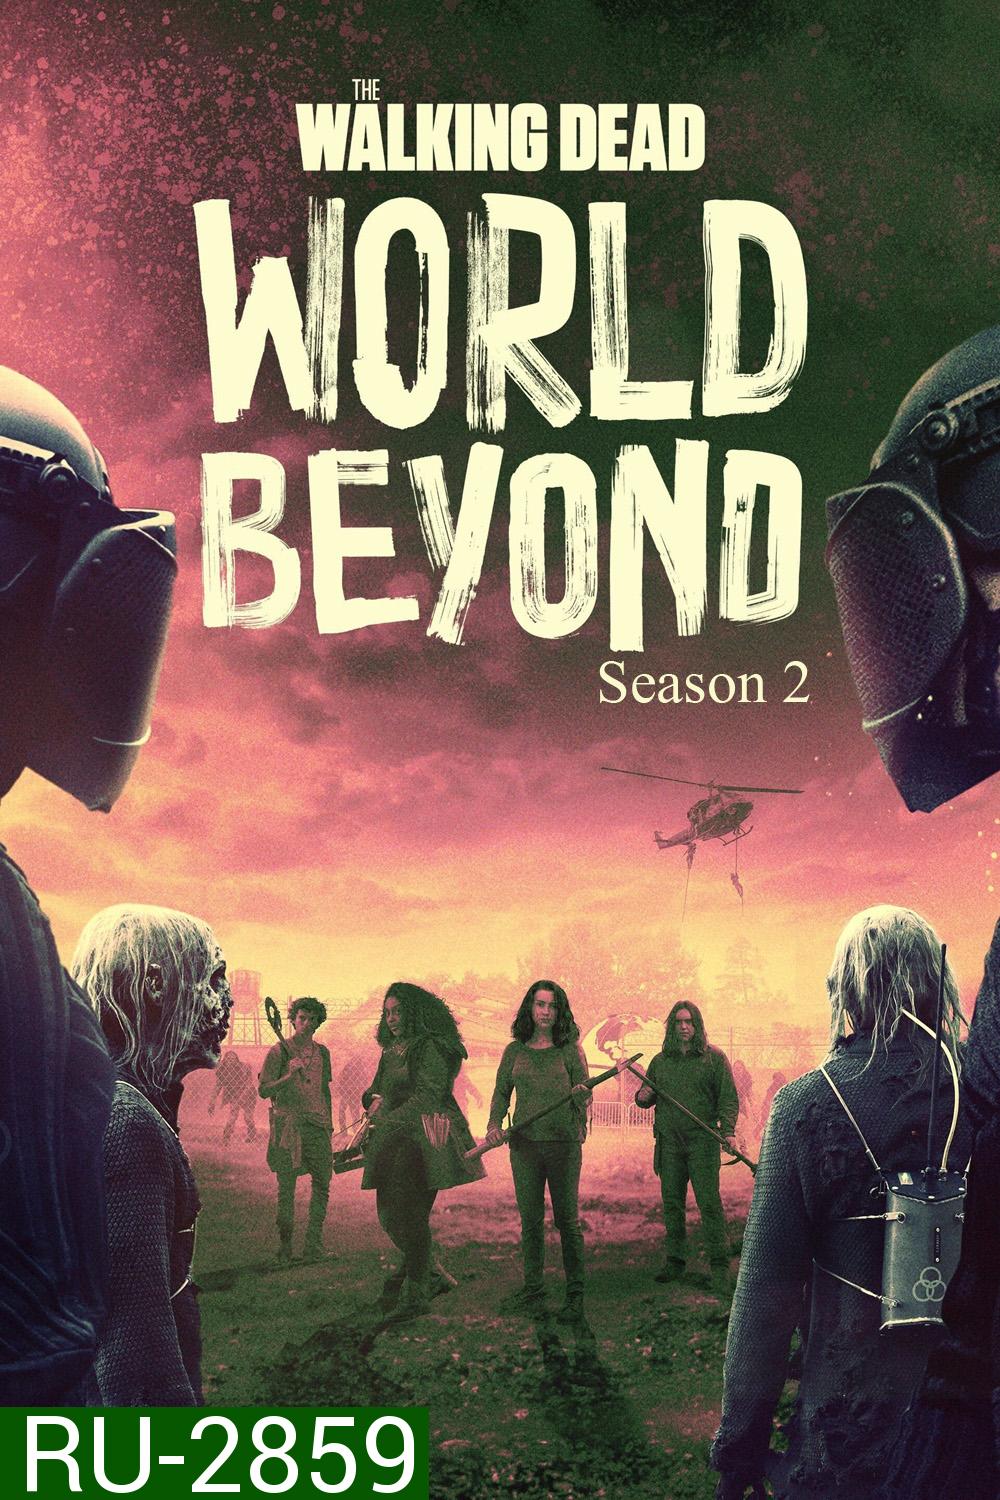 {ซับไทยจะขึ้นเร็วกว่าพูดนิดหน่อย} The Walking Dead World Beyond Season 2 เดอะวอล์กกิงเดด: สู่โลกกว้าง (2021) 10 ตอน